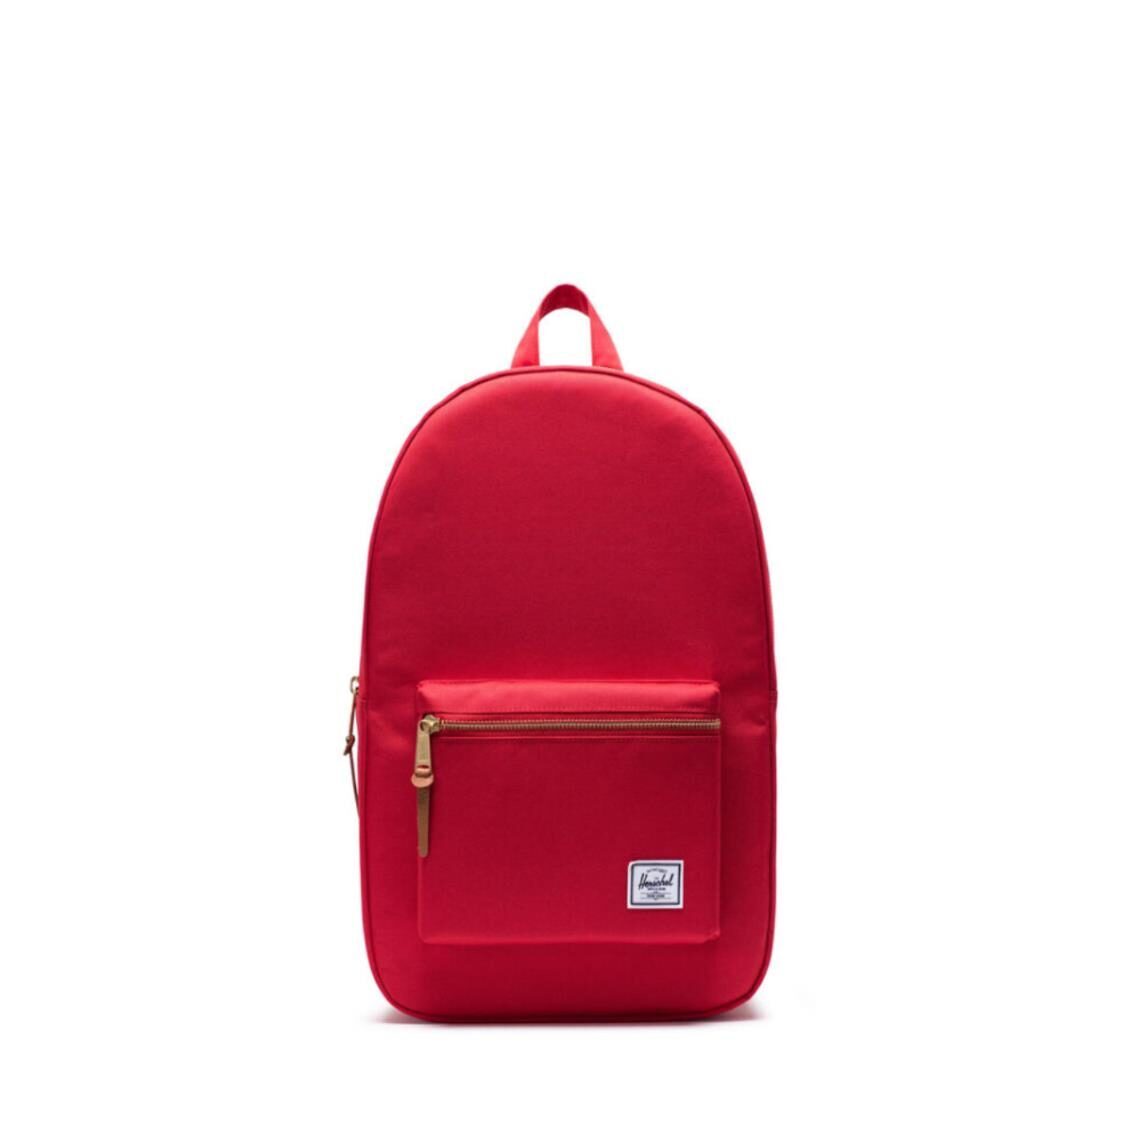 Herschel Settlement Backpack Red 10005-03270-OS